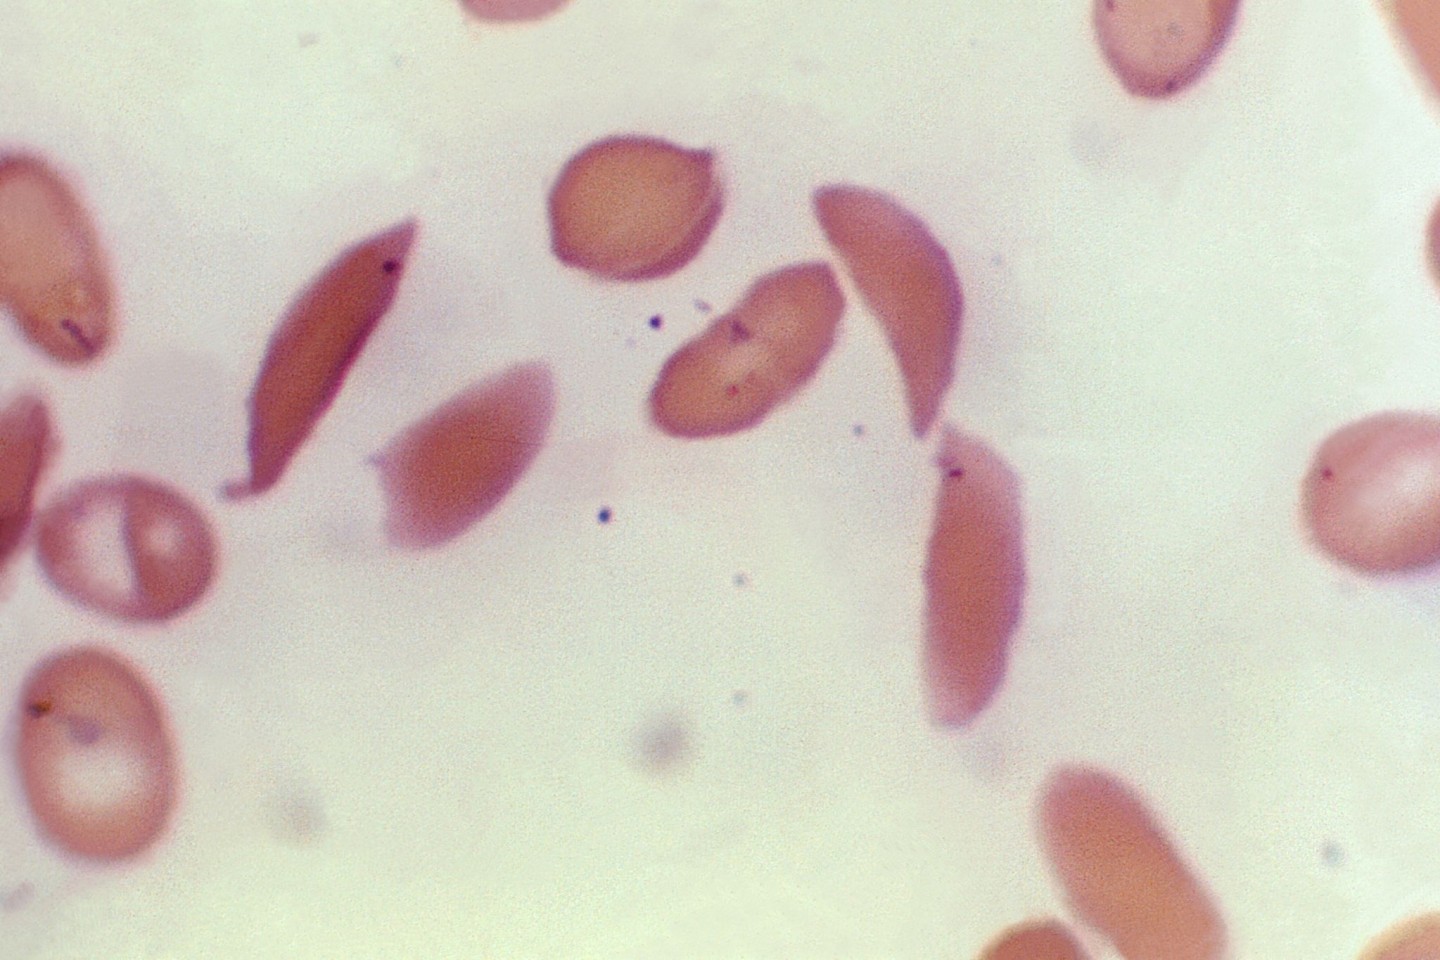 Mikroskopbild zeigt halbmondförmige rote Blutkörperchen eines an Sichelzellenanämie erkrankten Patienten aus dem Jahr 1972.